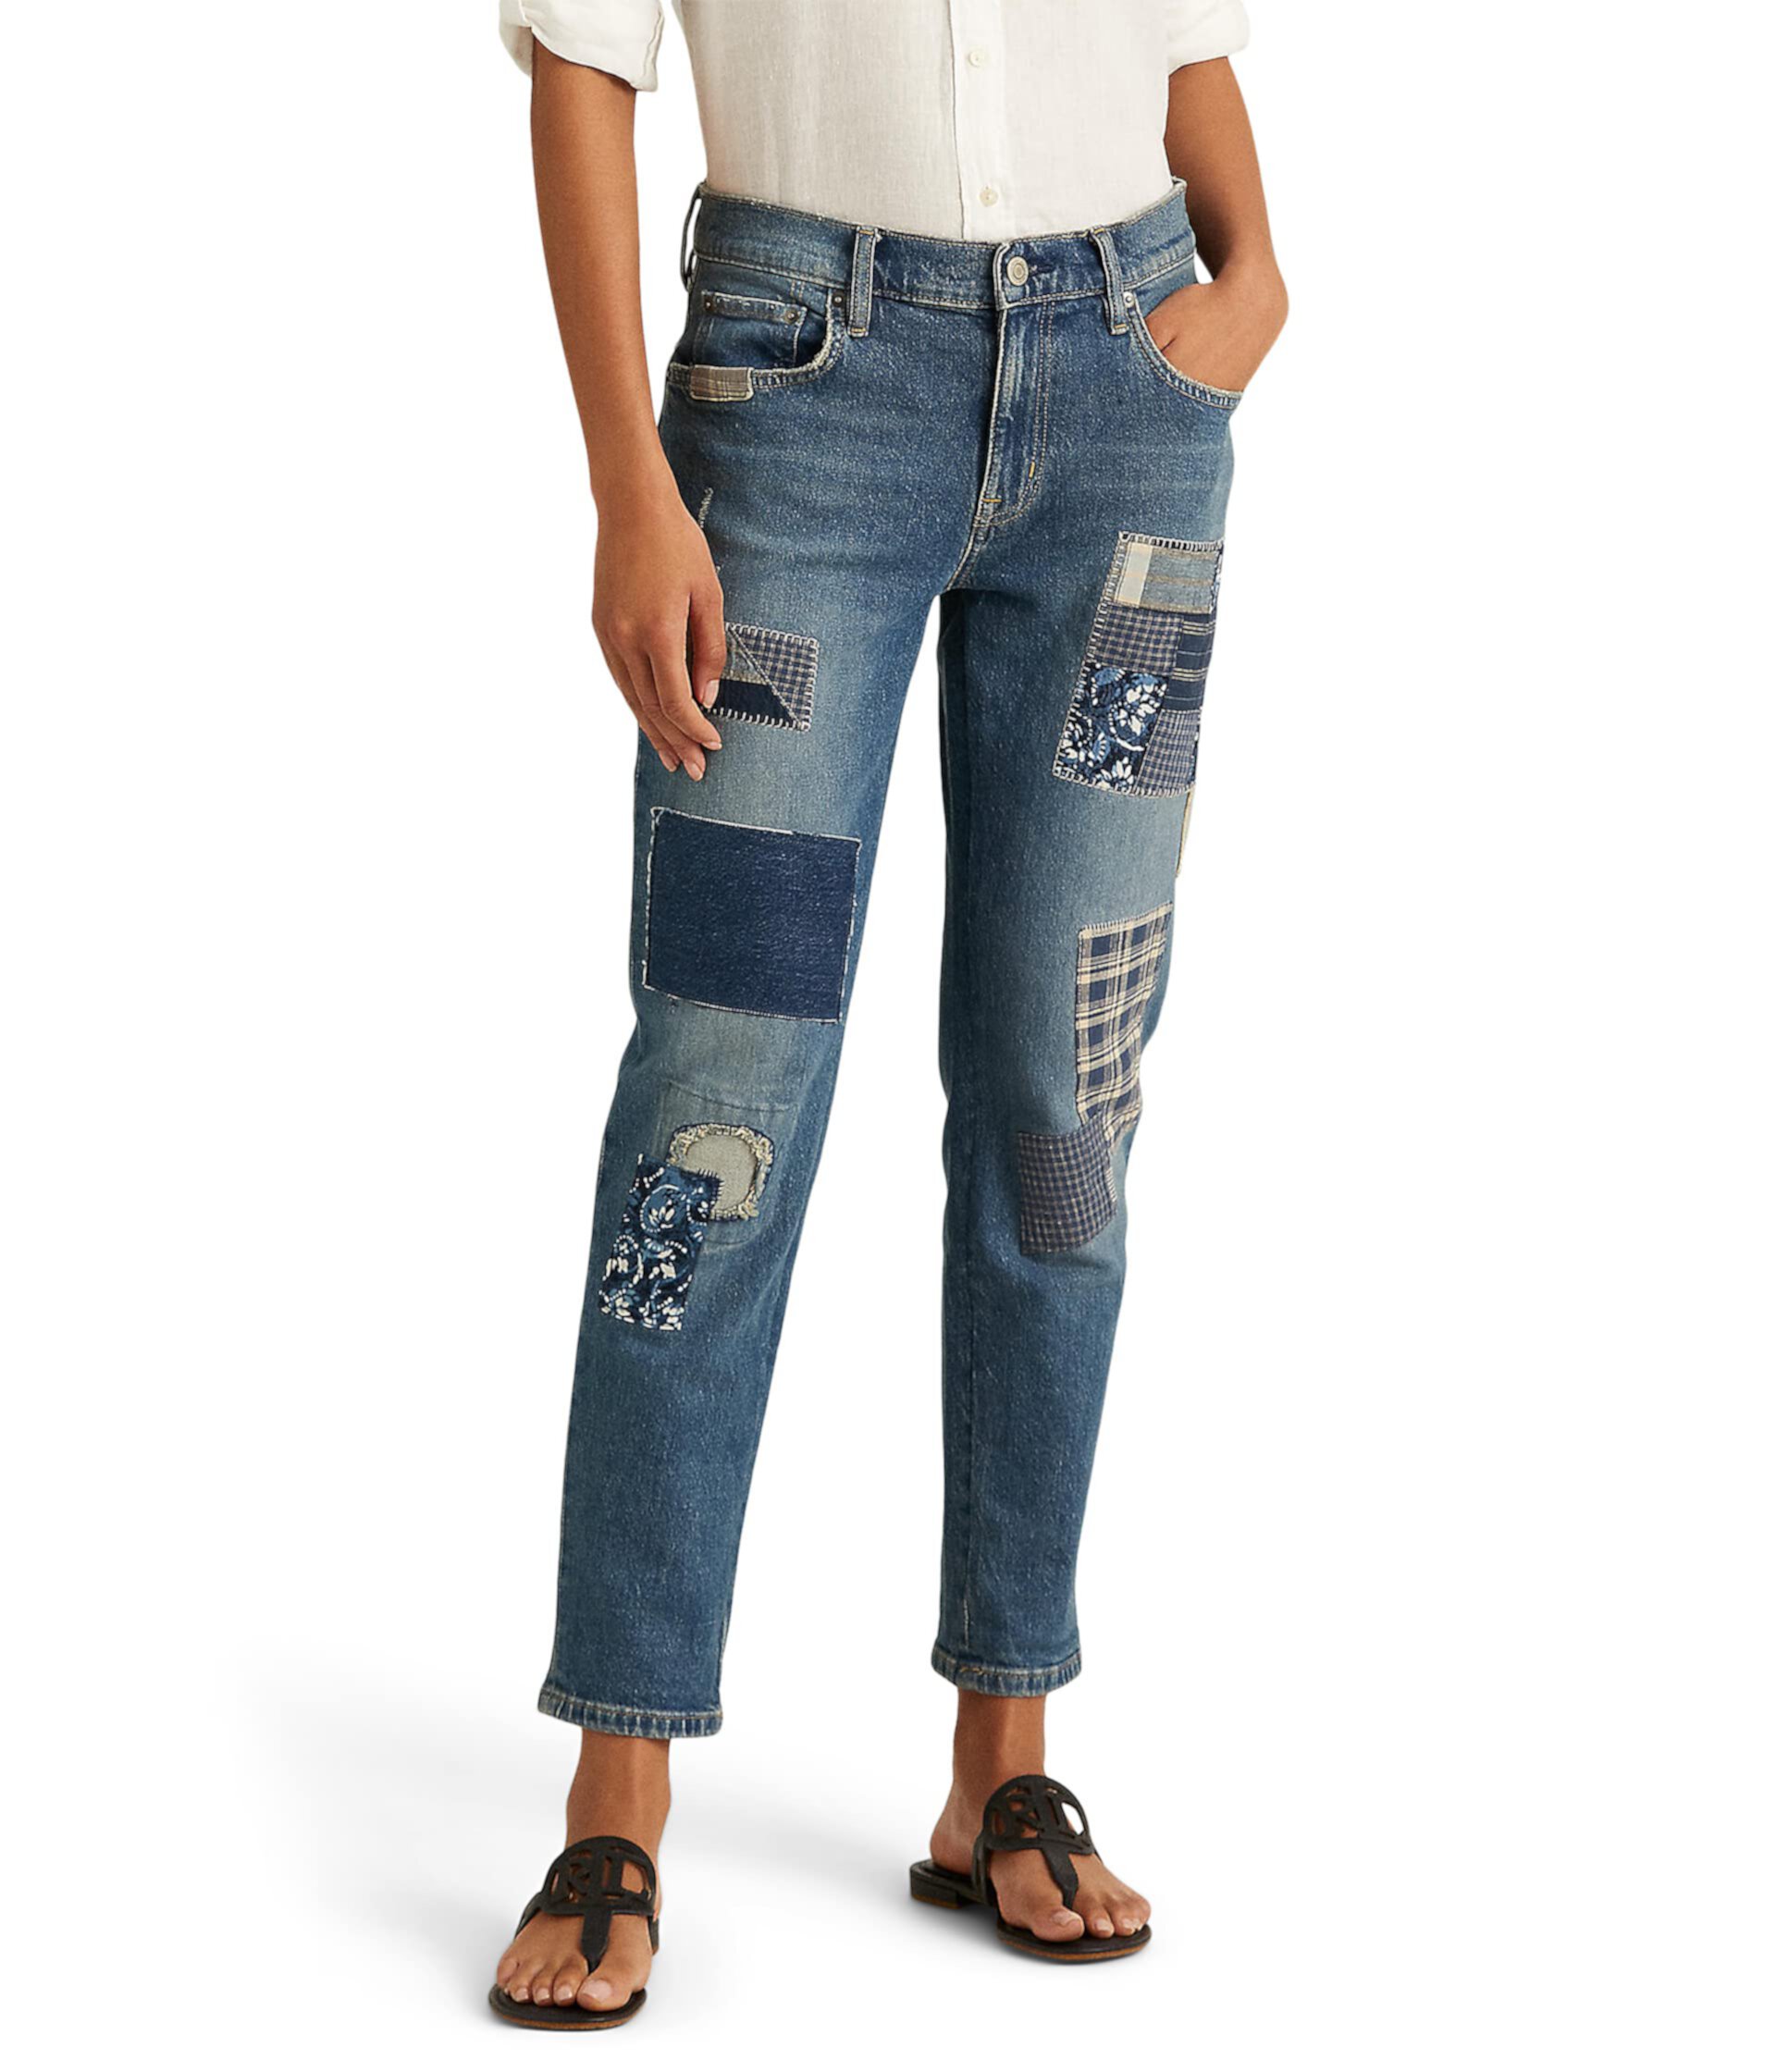 Свободные зауженные джинсы в технике пэчворк цвета Bluestone Wash Ralph Lauren